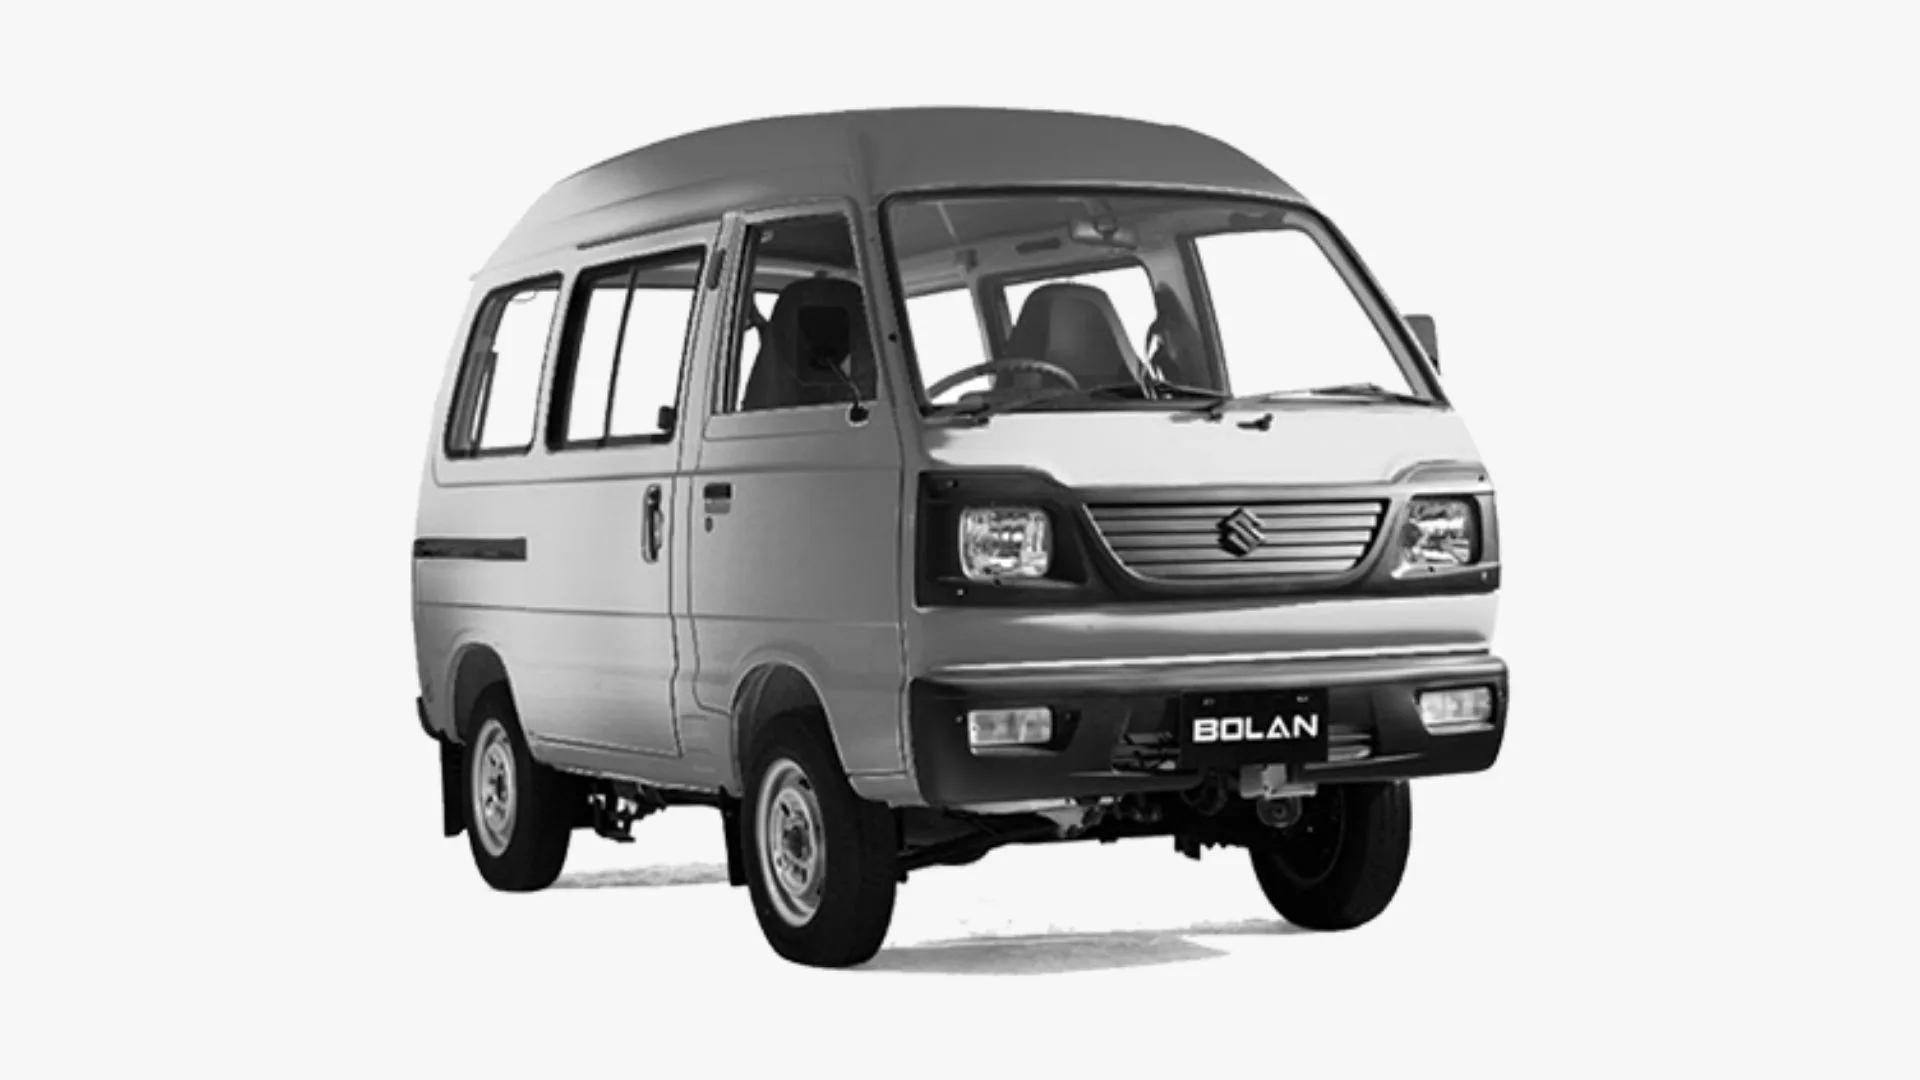 Suzuki Bolan fuel average 